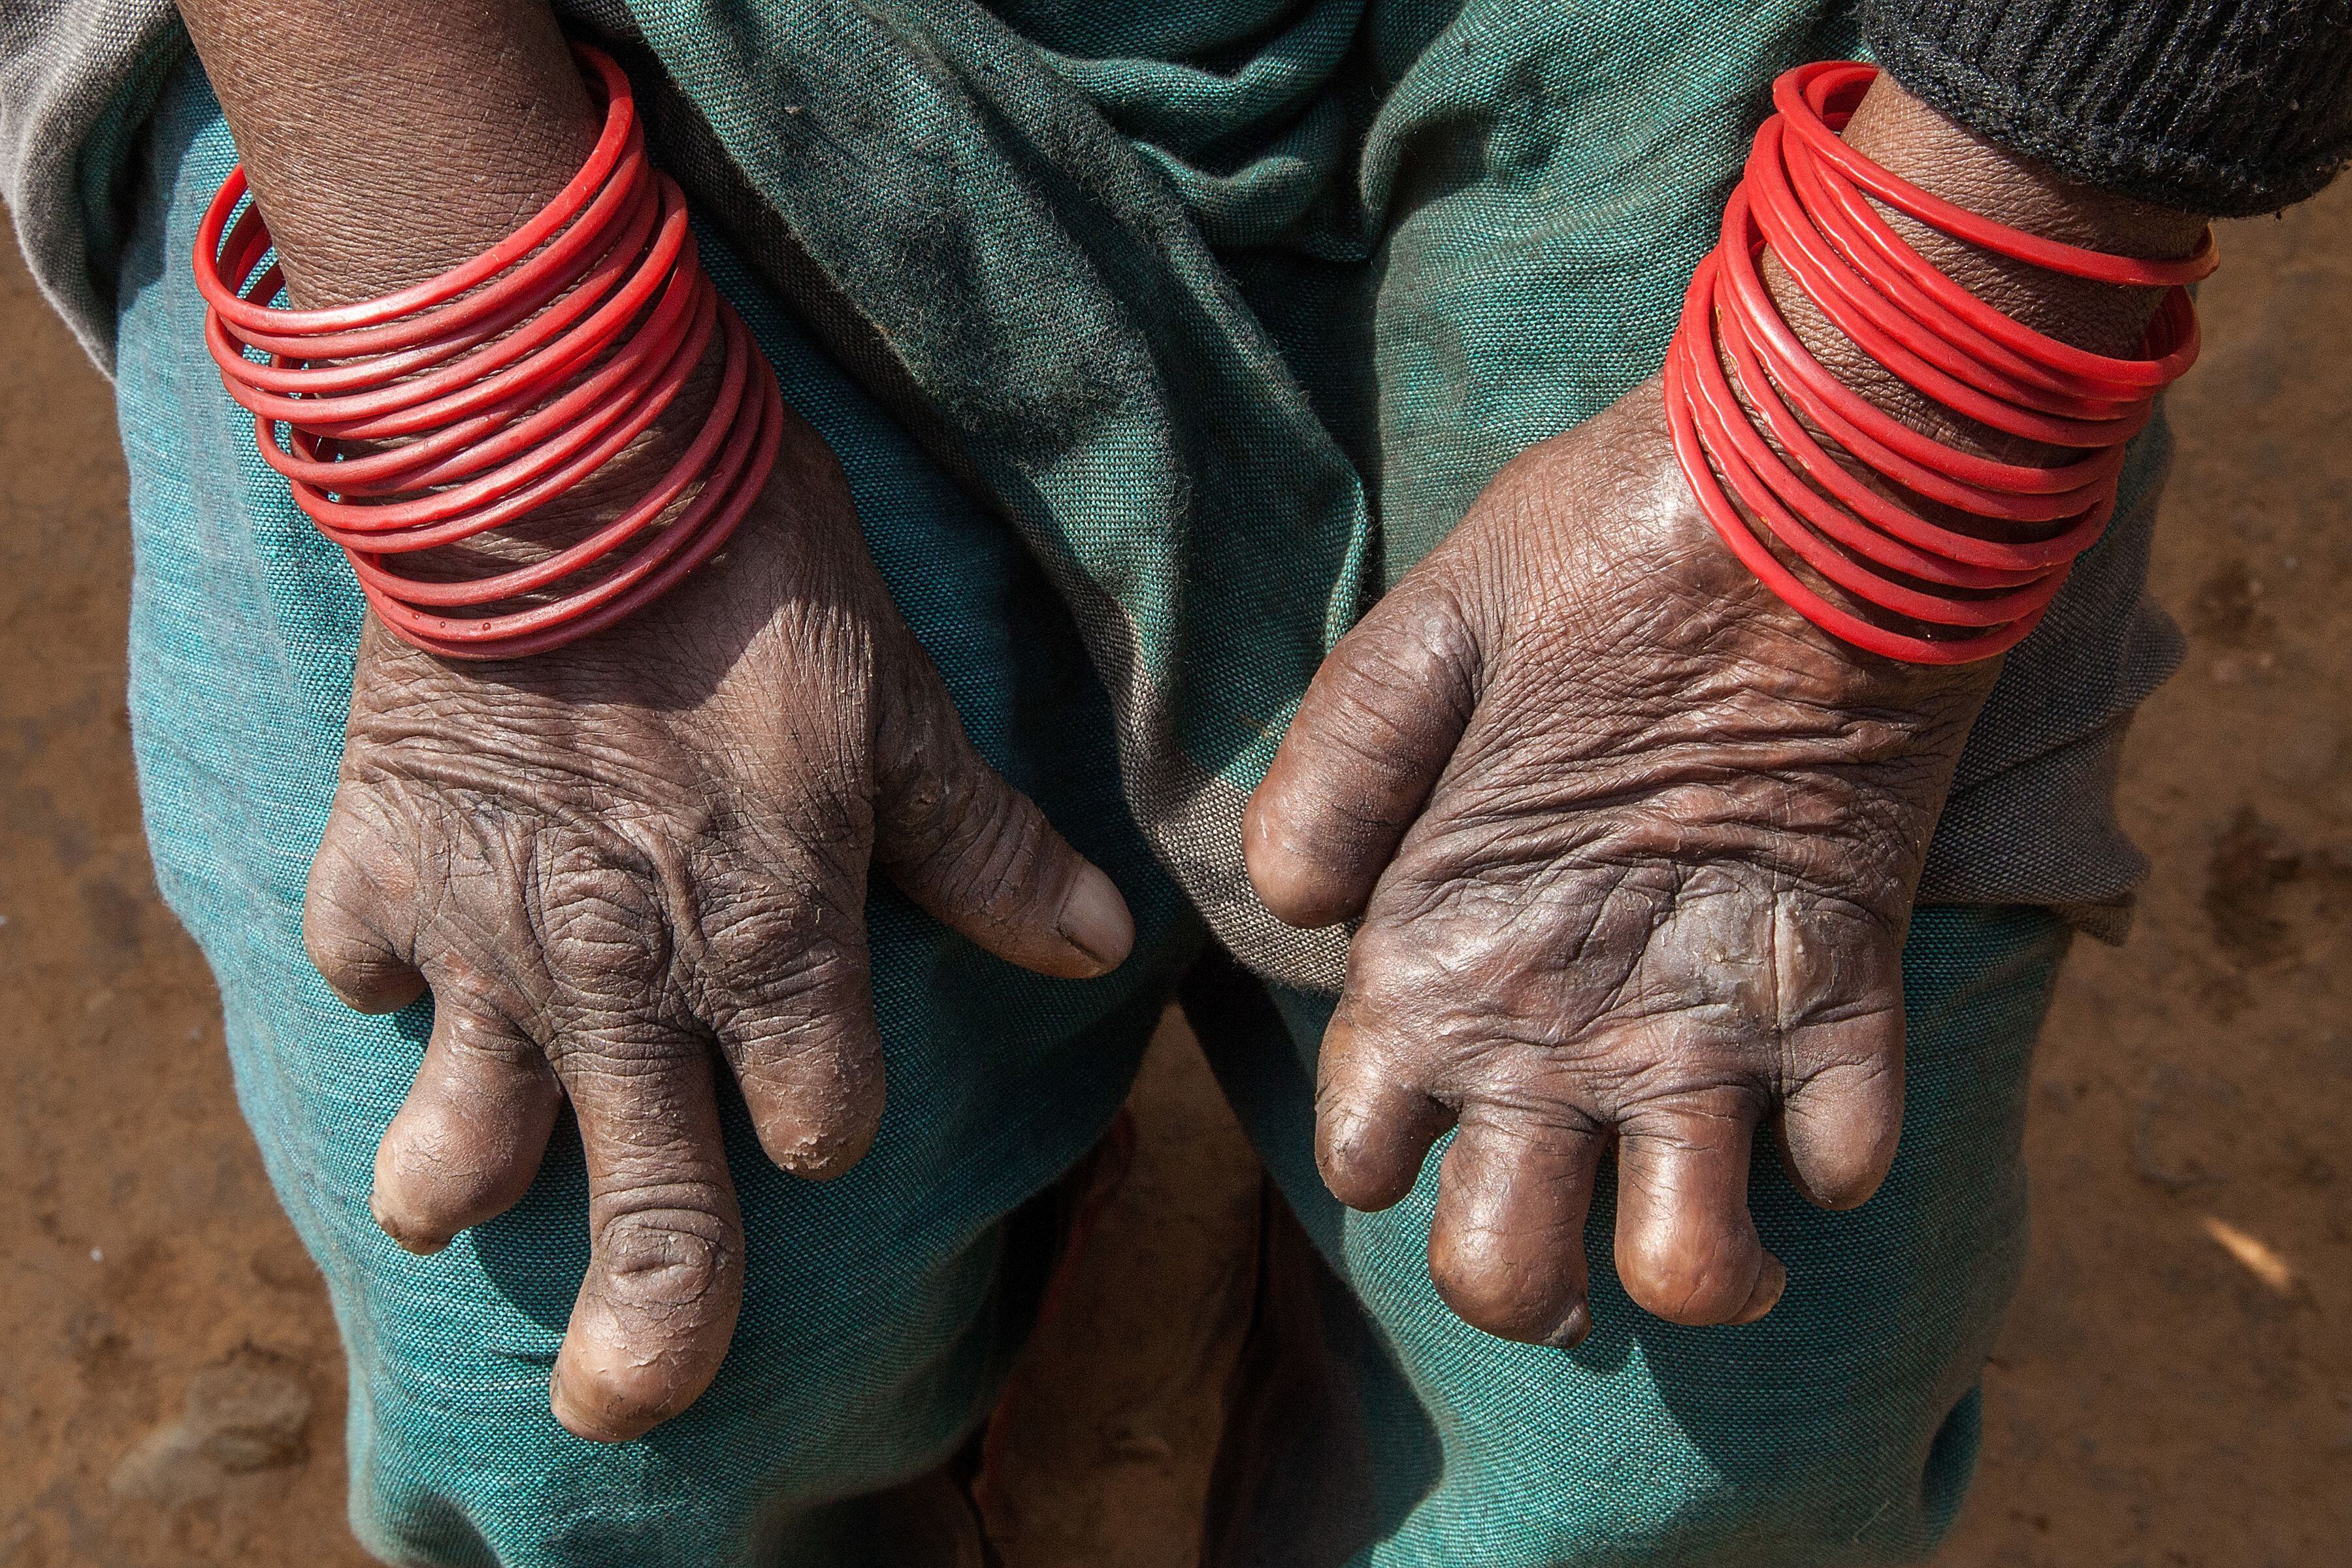 Una mujer afectada por lepra muestra sus manos en el hospital Leprosy Mission de Nepal, uno de los países donde existen aún leyes discriminatorias contra personas que han padecido o padecen esta enfermedad. 